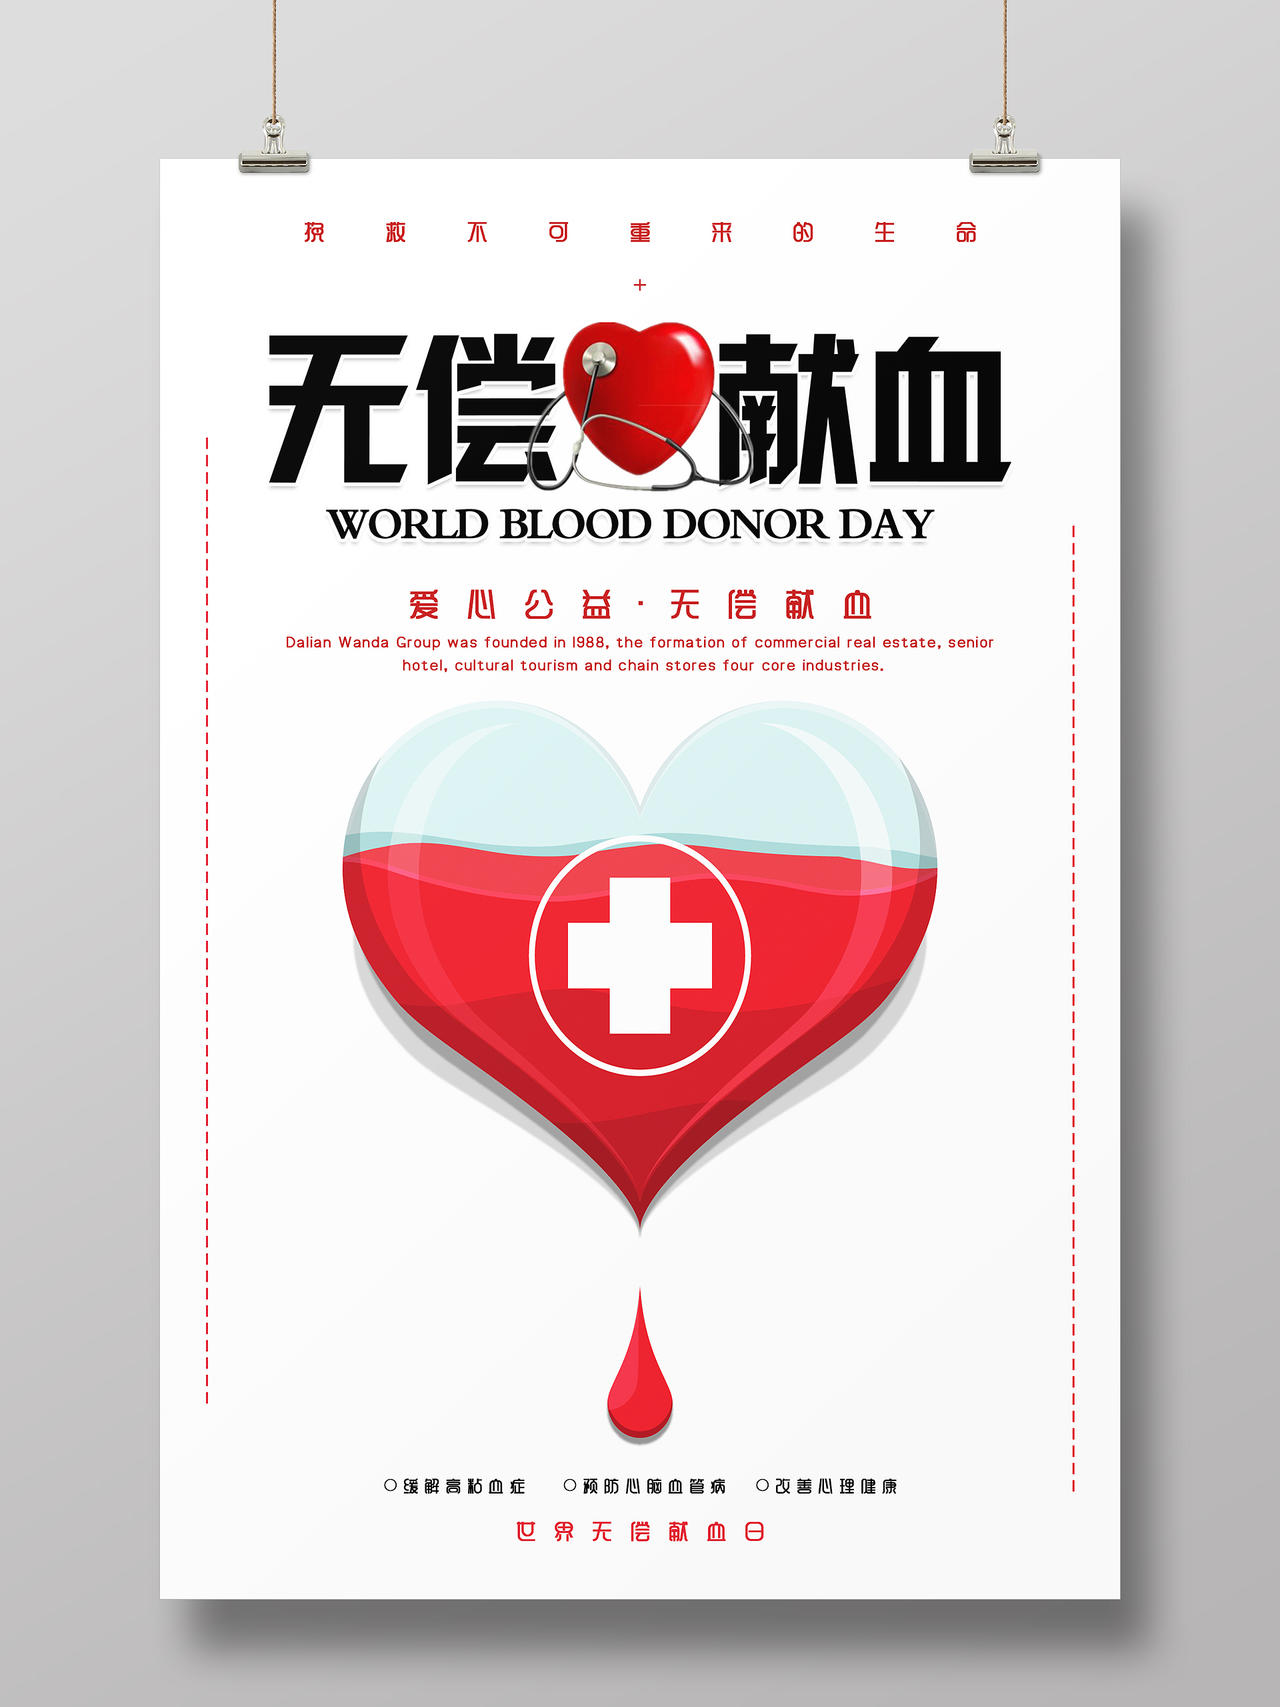 简约清新世界无偿献血日世界献血者日海报